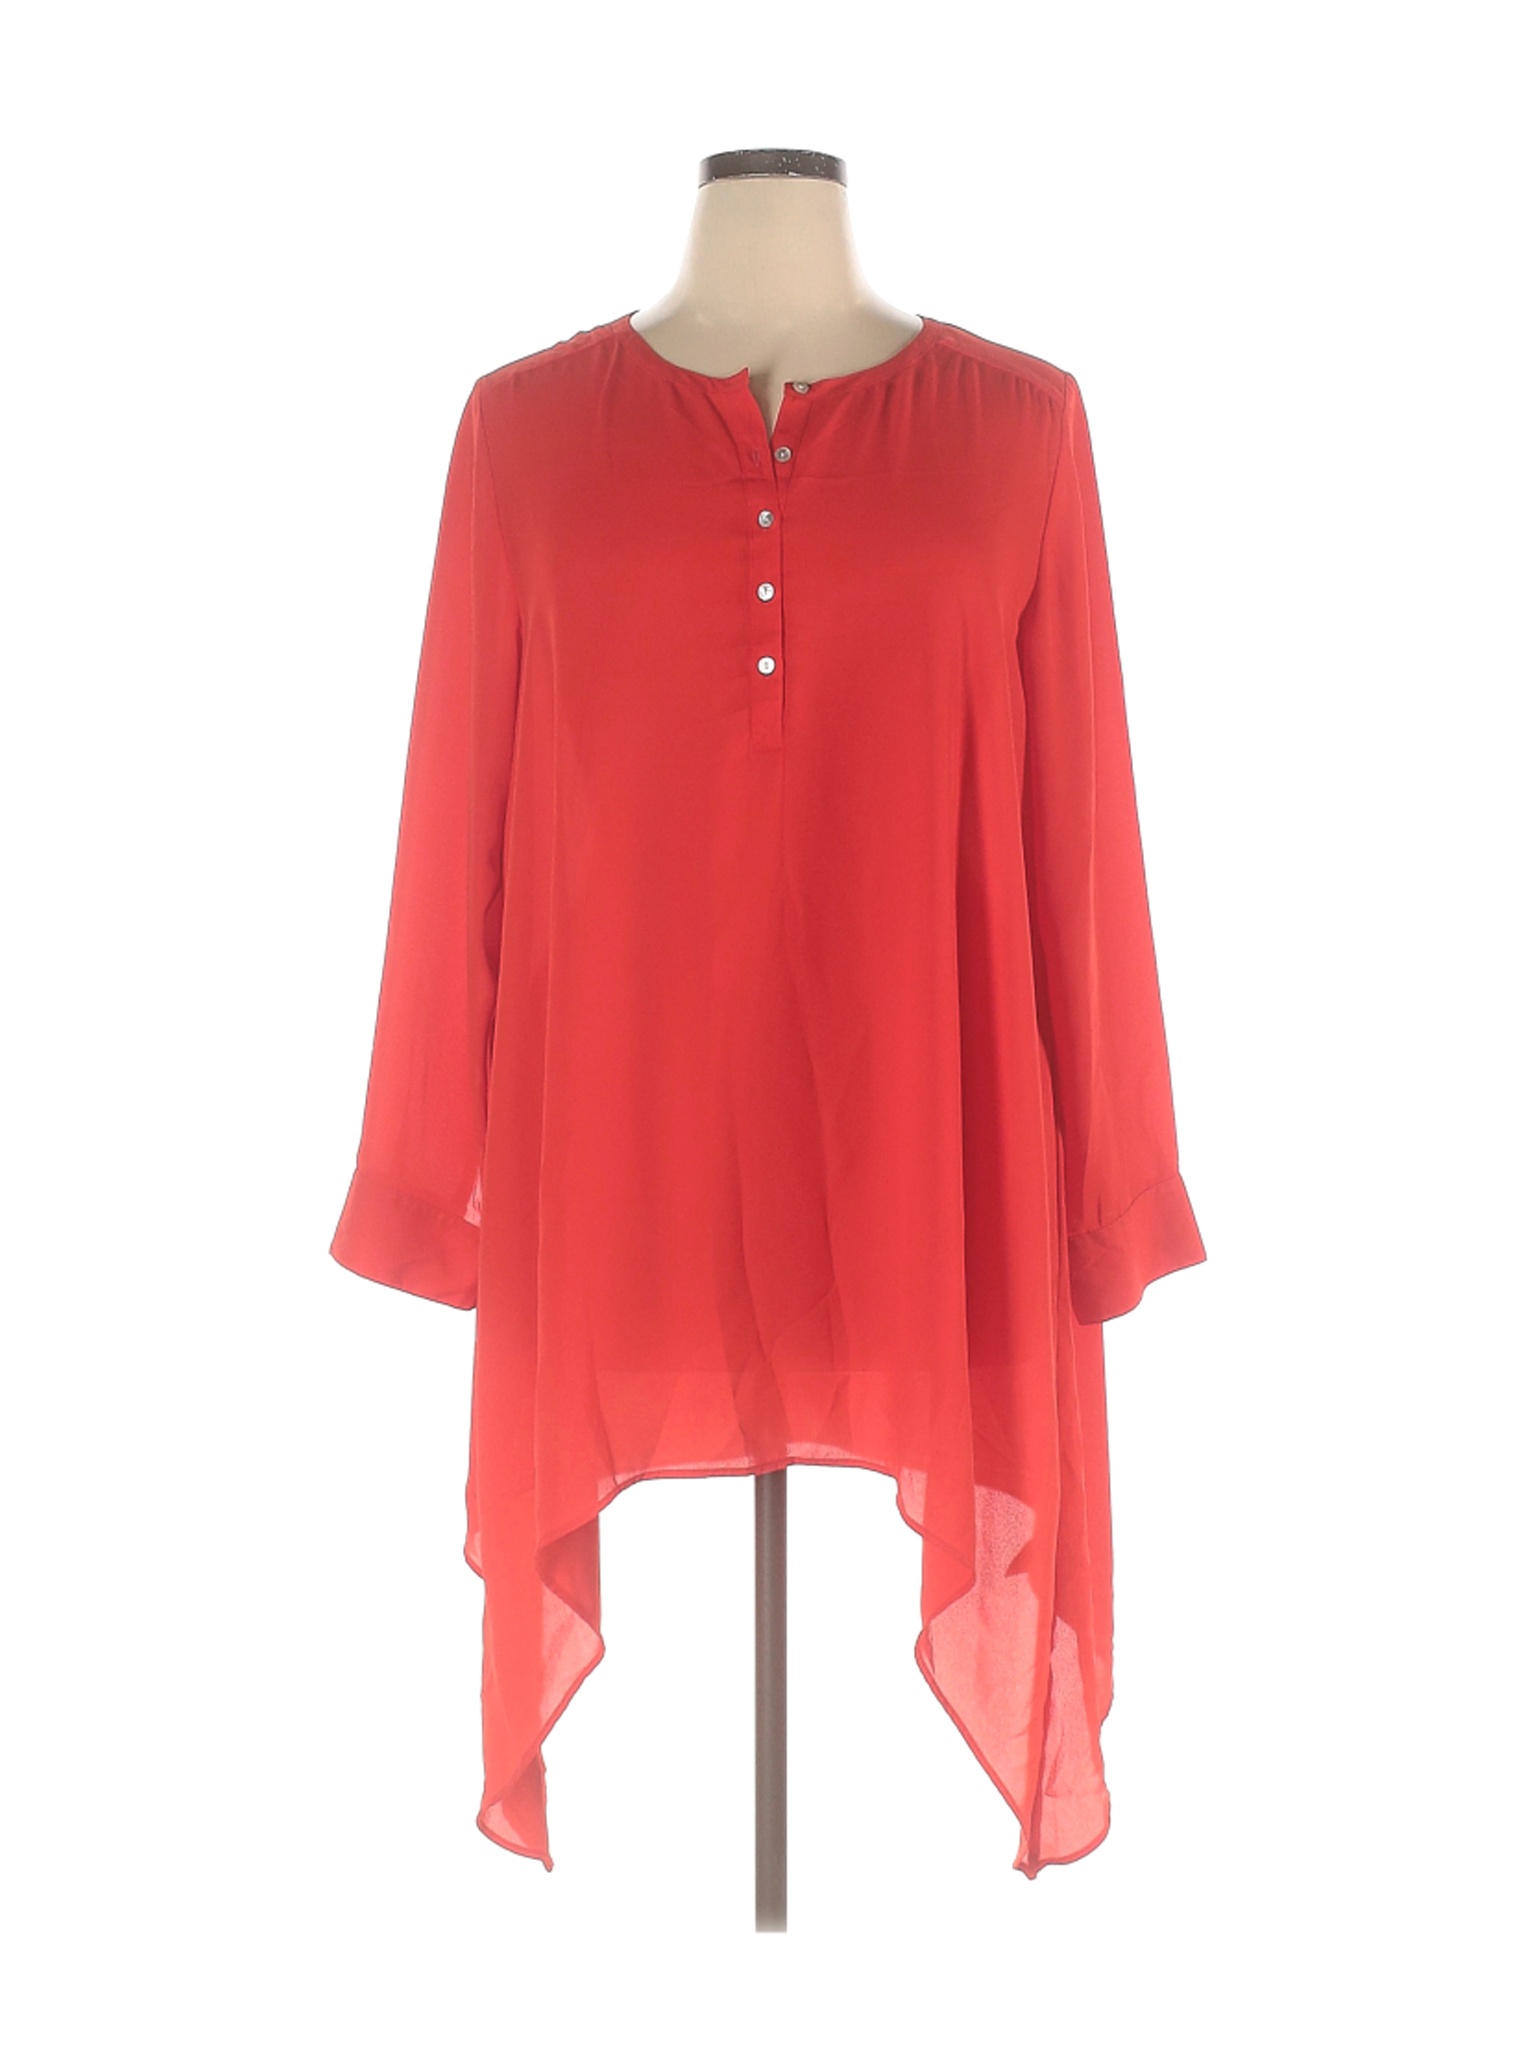 Denim 24/7 Women Red Long Sleeve Blouse 16 | eBay